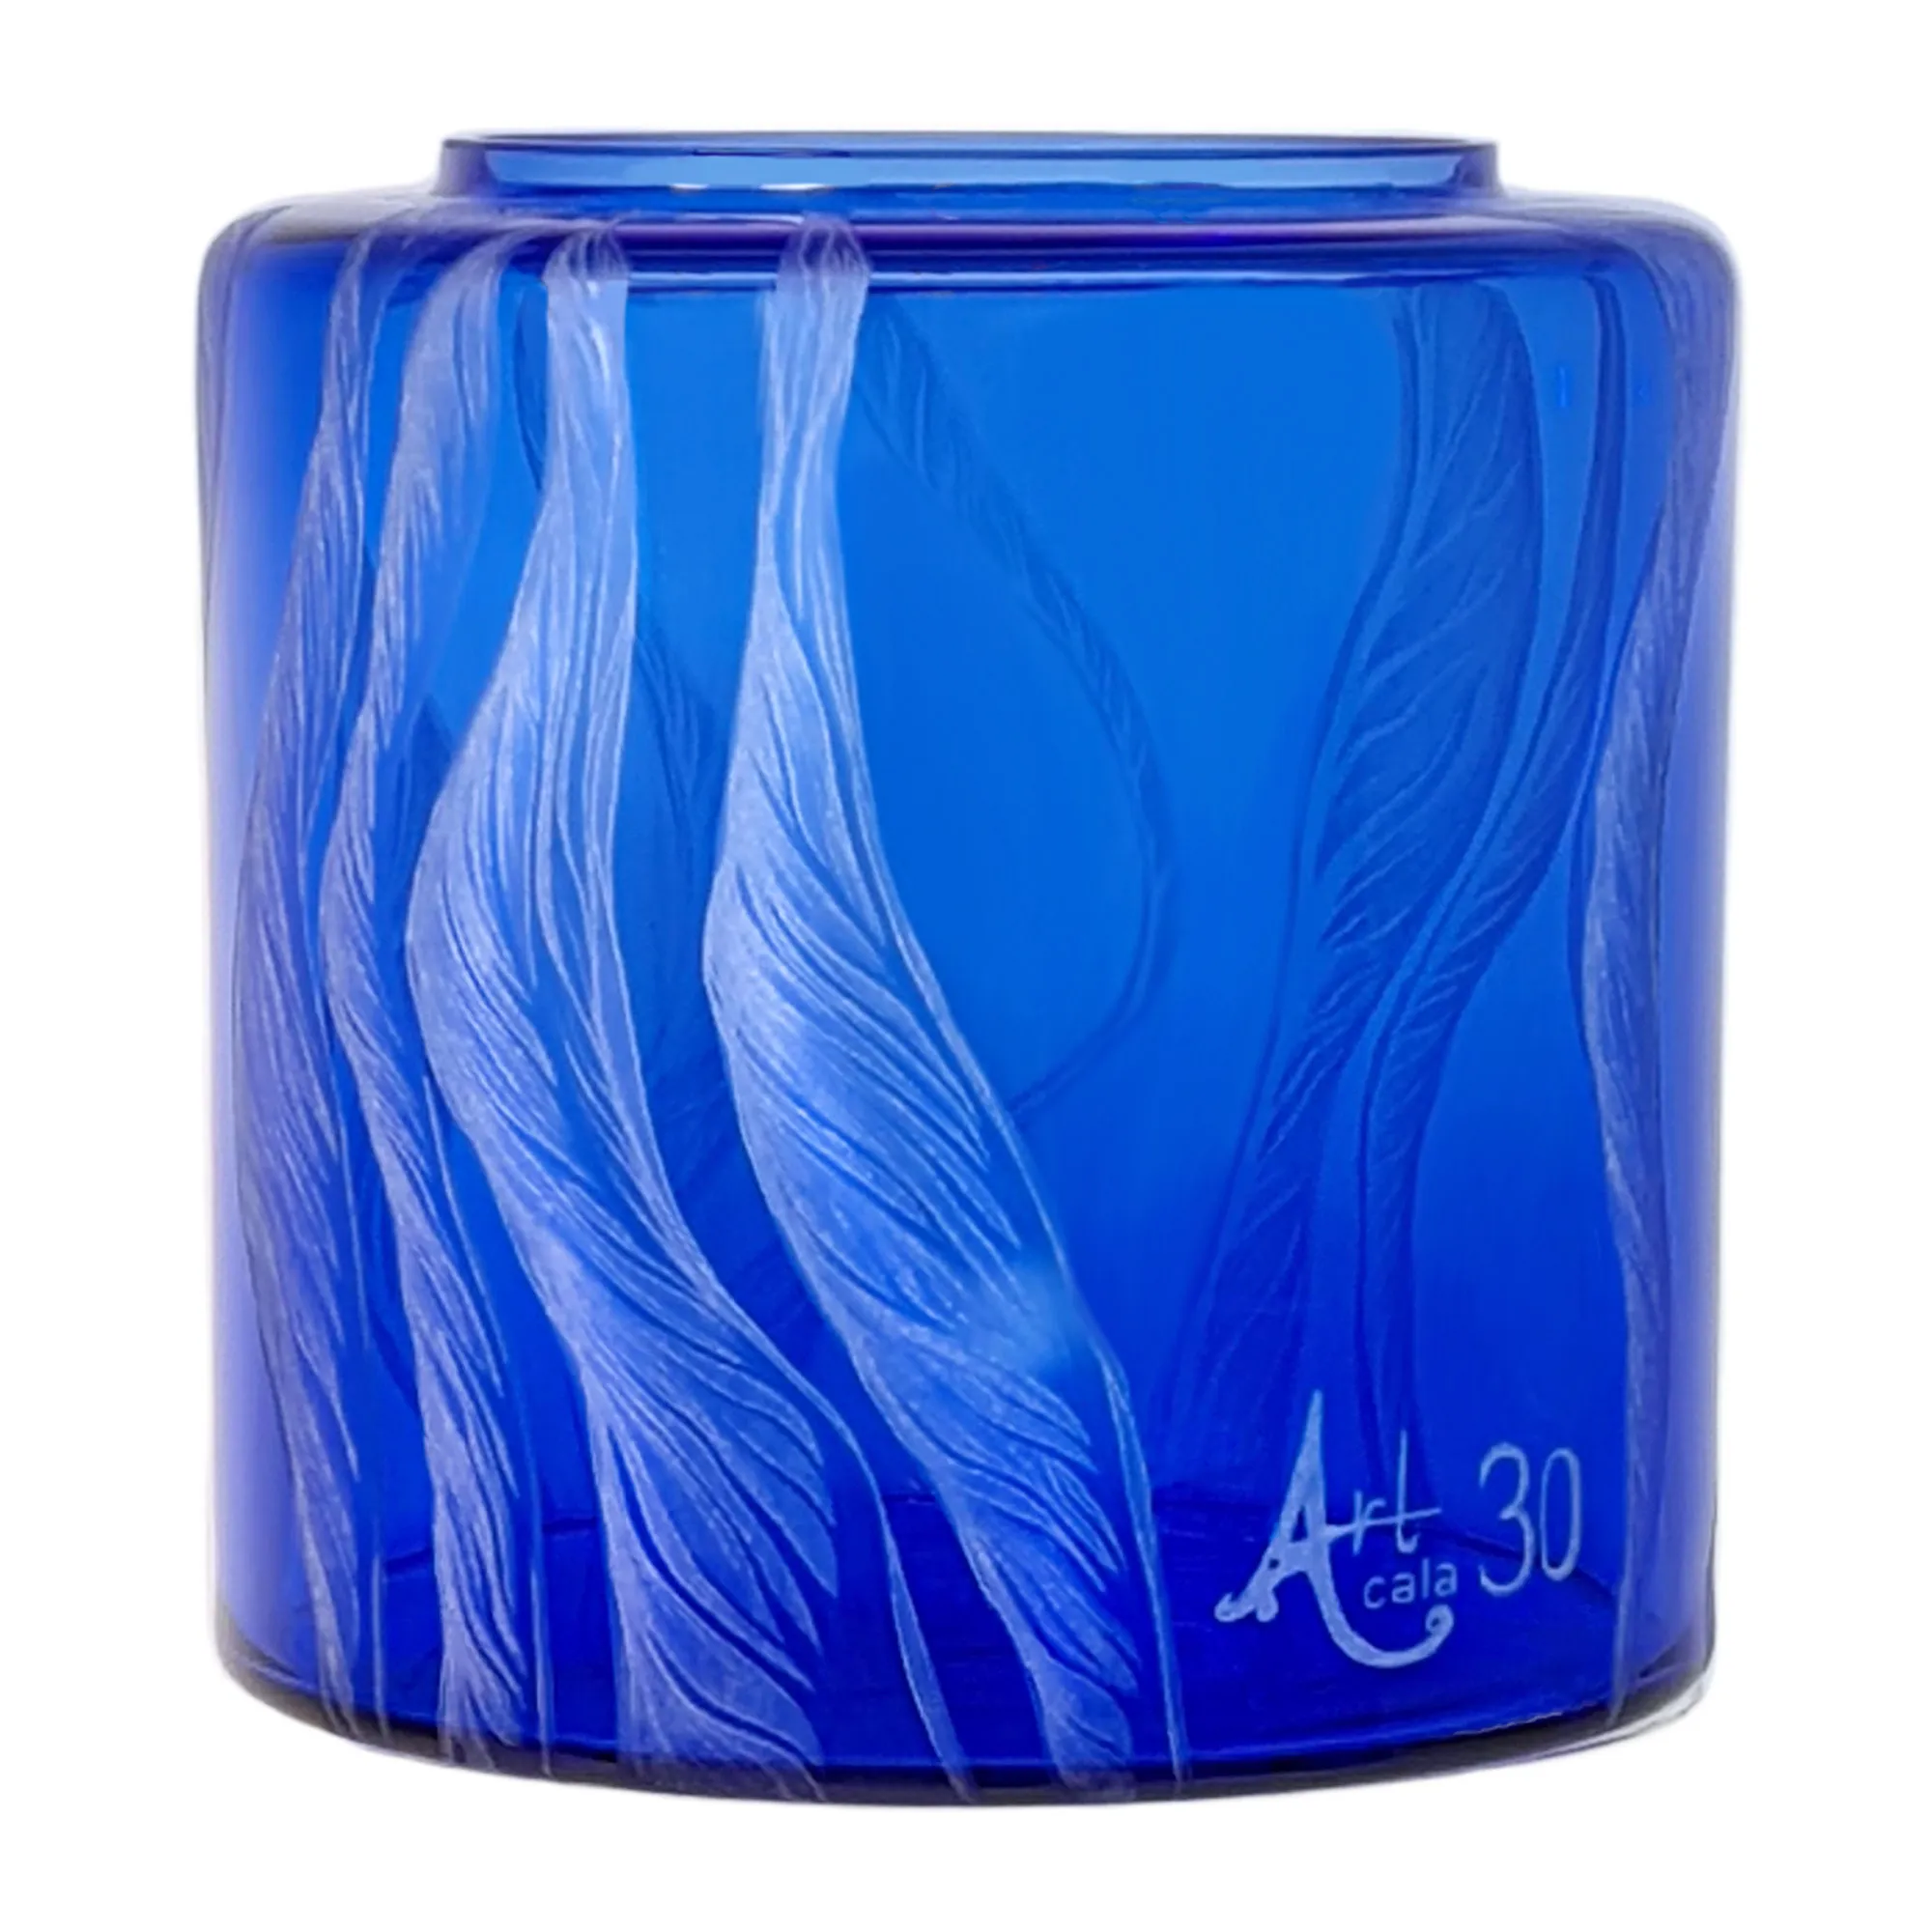 Vorratstank für Wasserfilter Mini mit einer Handgravur. Die Gravur zeigt, auf blauem Glas. Wellen die in welligen Linien gerade am Glas noch oben gehen, die Wellen verteilen sich rund um das runde Glas. Ansicht von hinten.